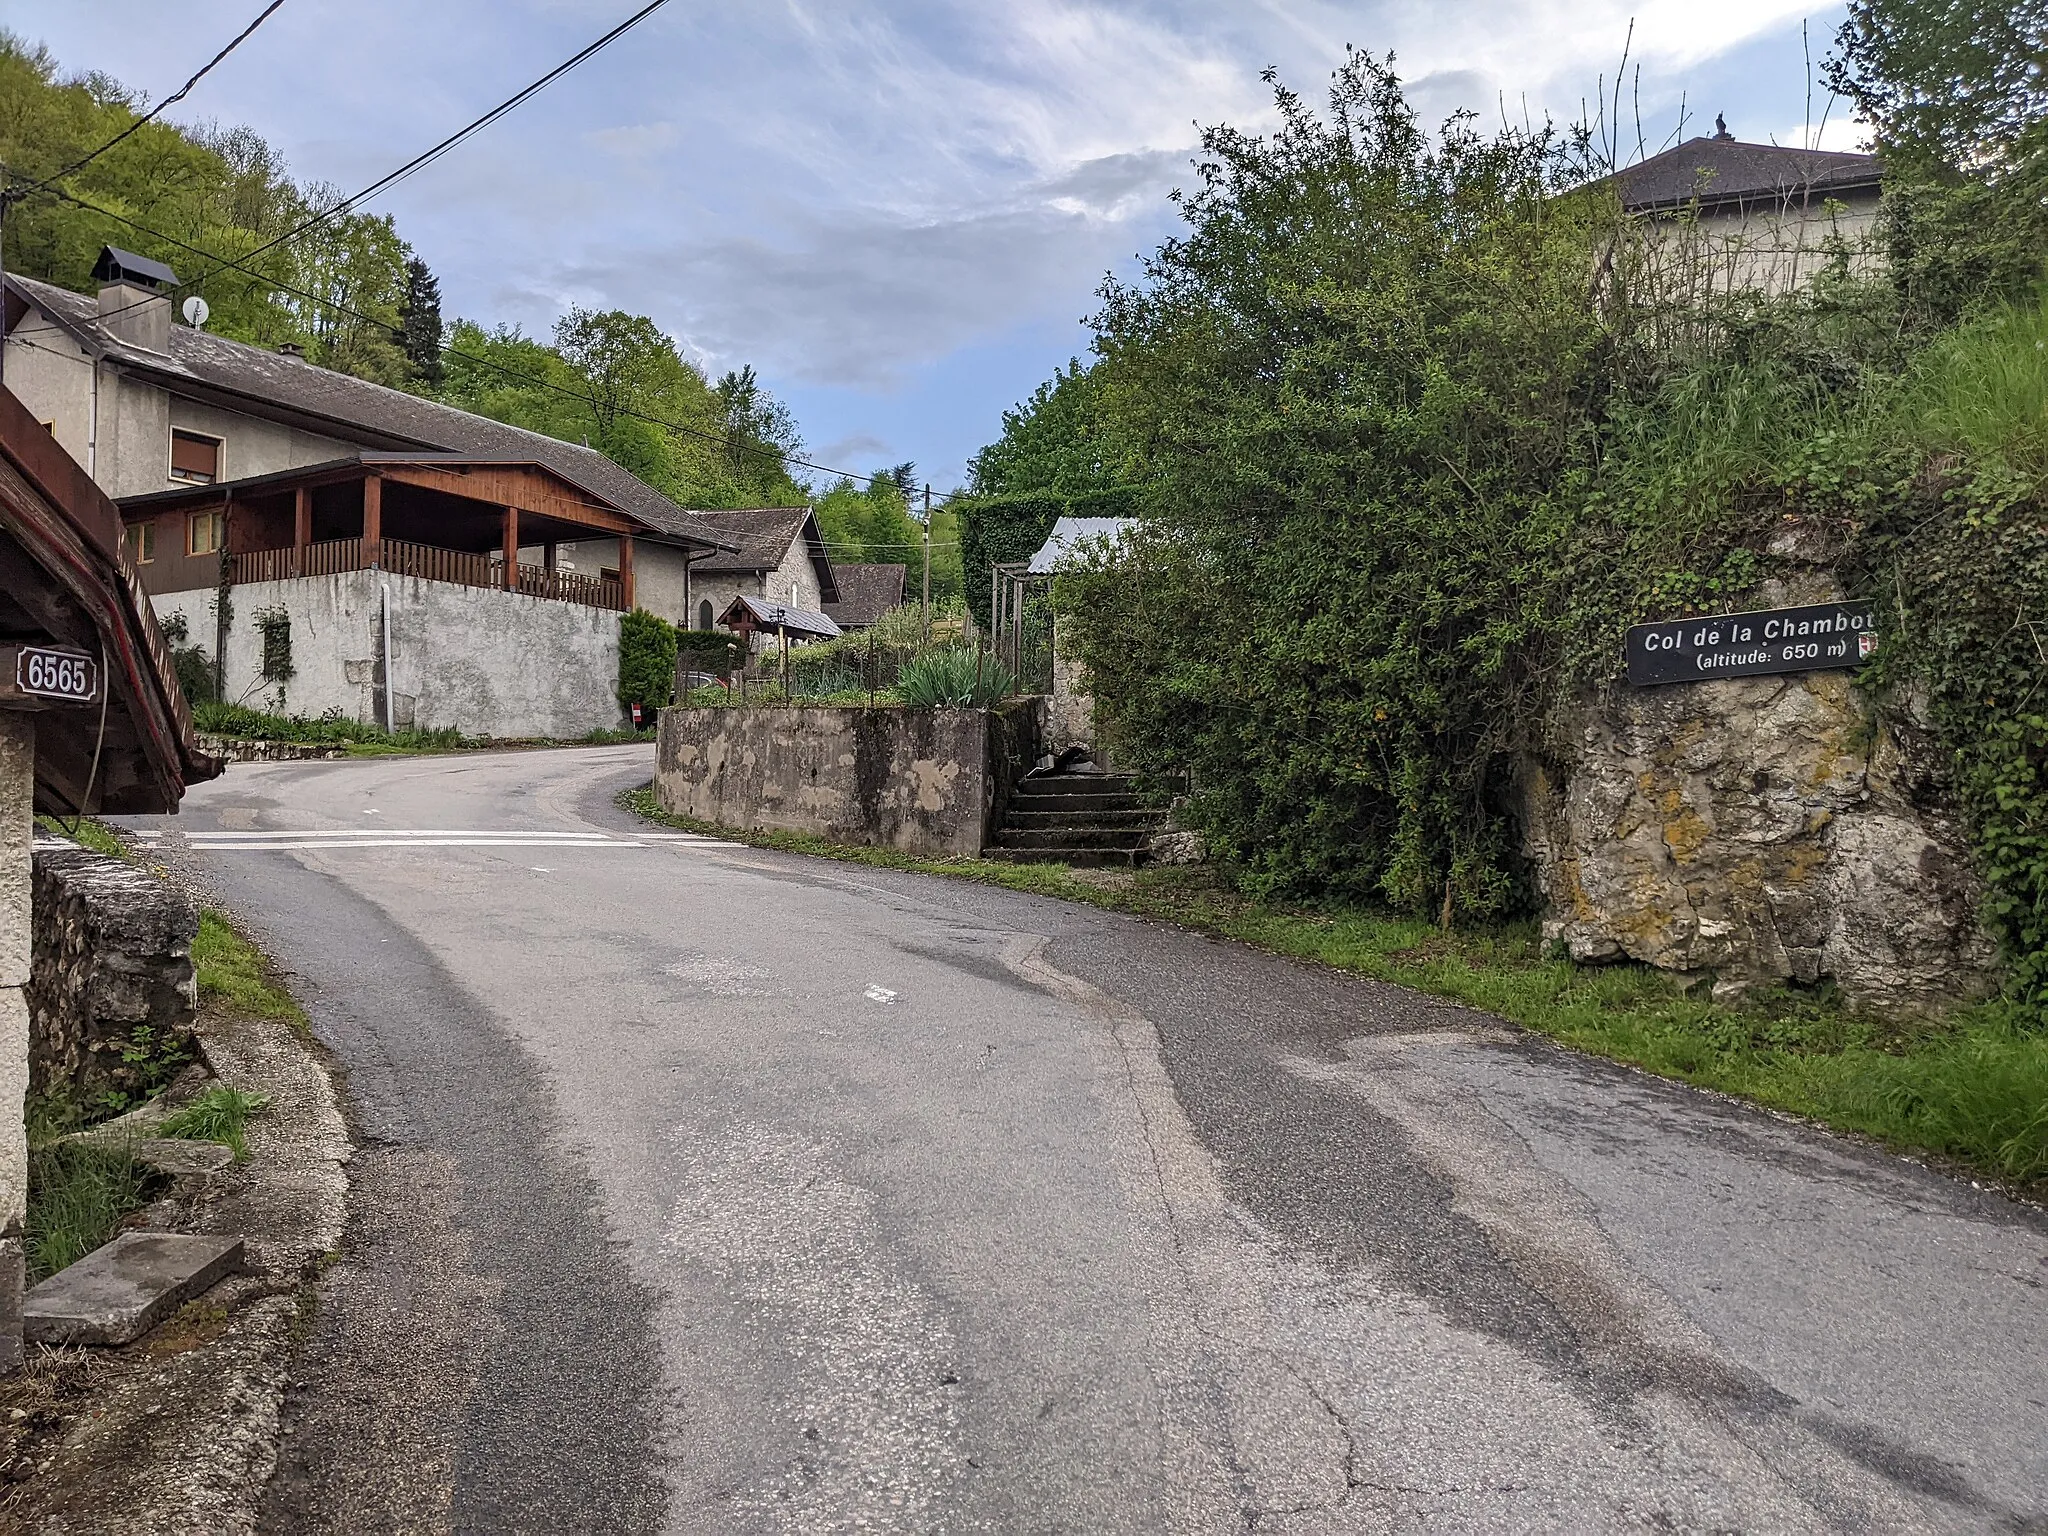 Photo showing: Passage dans le hameau de La Chambotte, près du col du même nom, à Saint-Germain-la-Chambotte (Savoie, France).